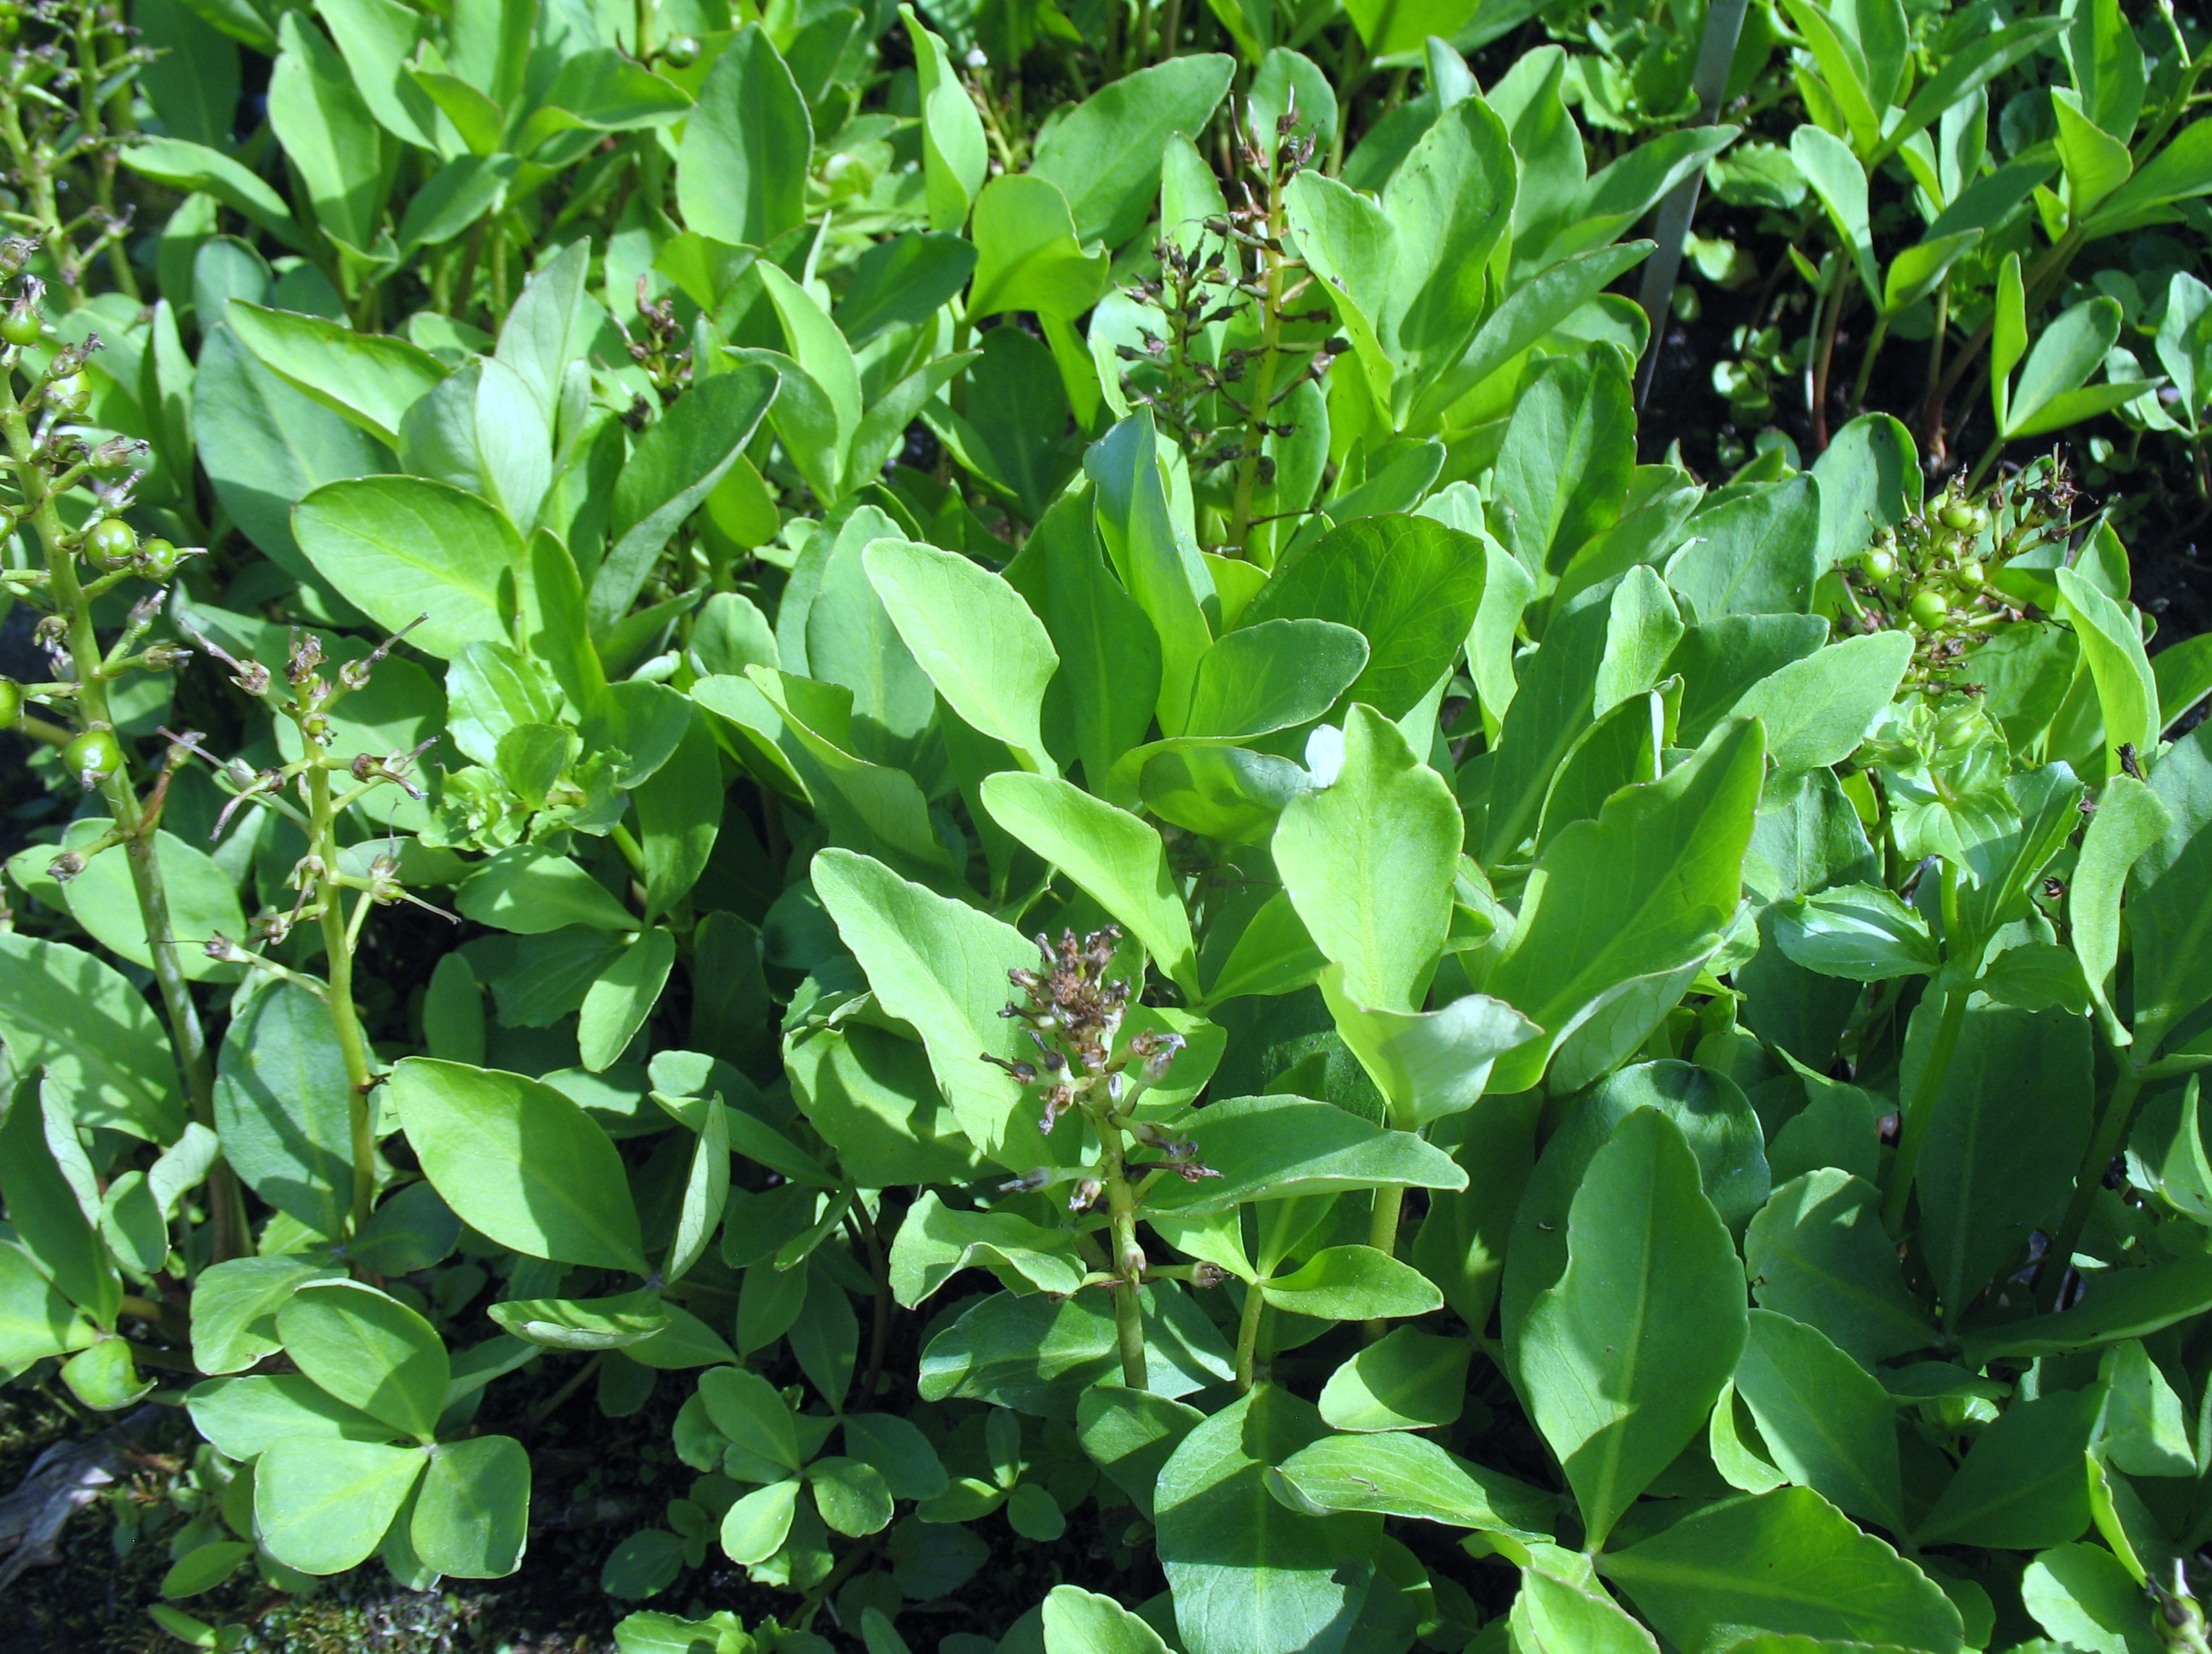 Menyanthes trifoliata / Menyanthes trifoliata